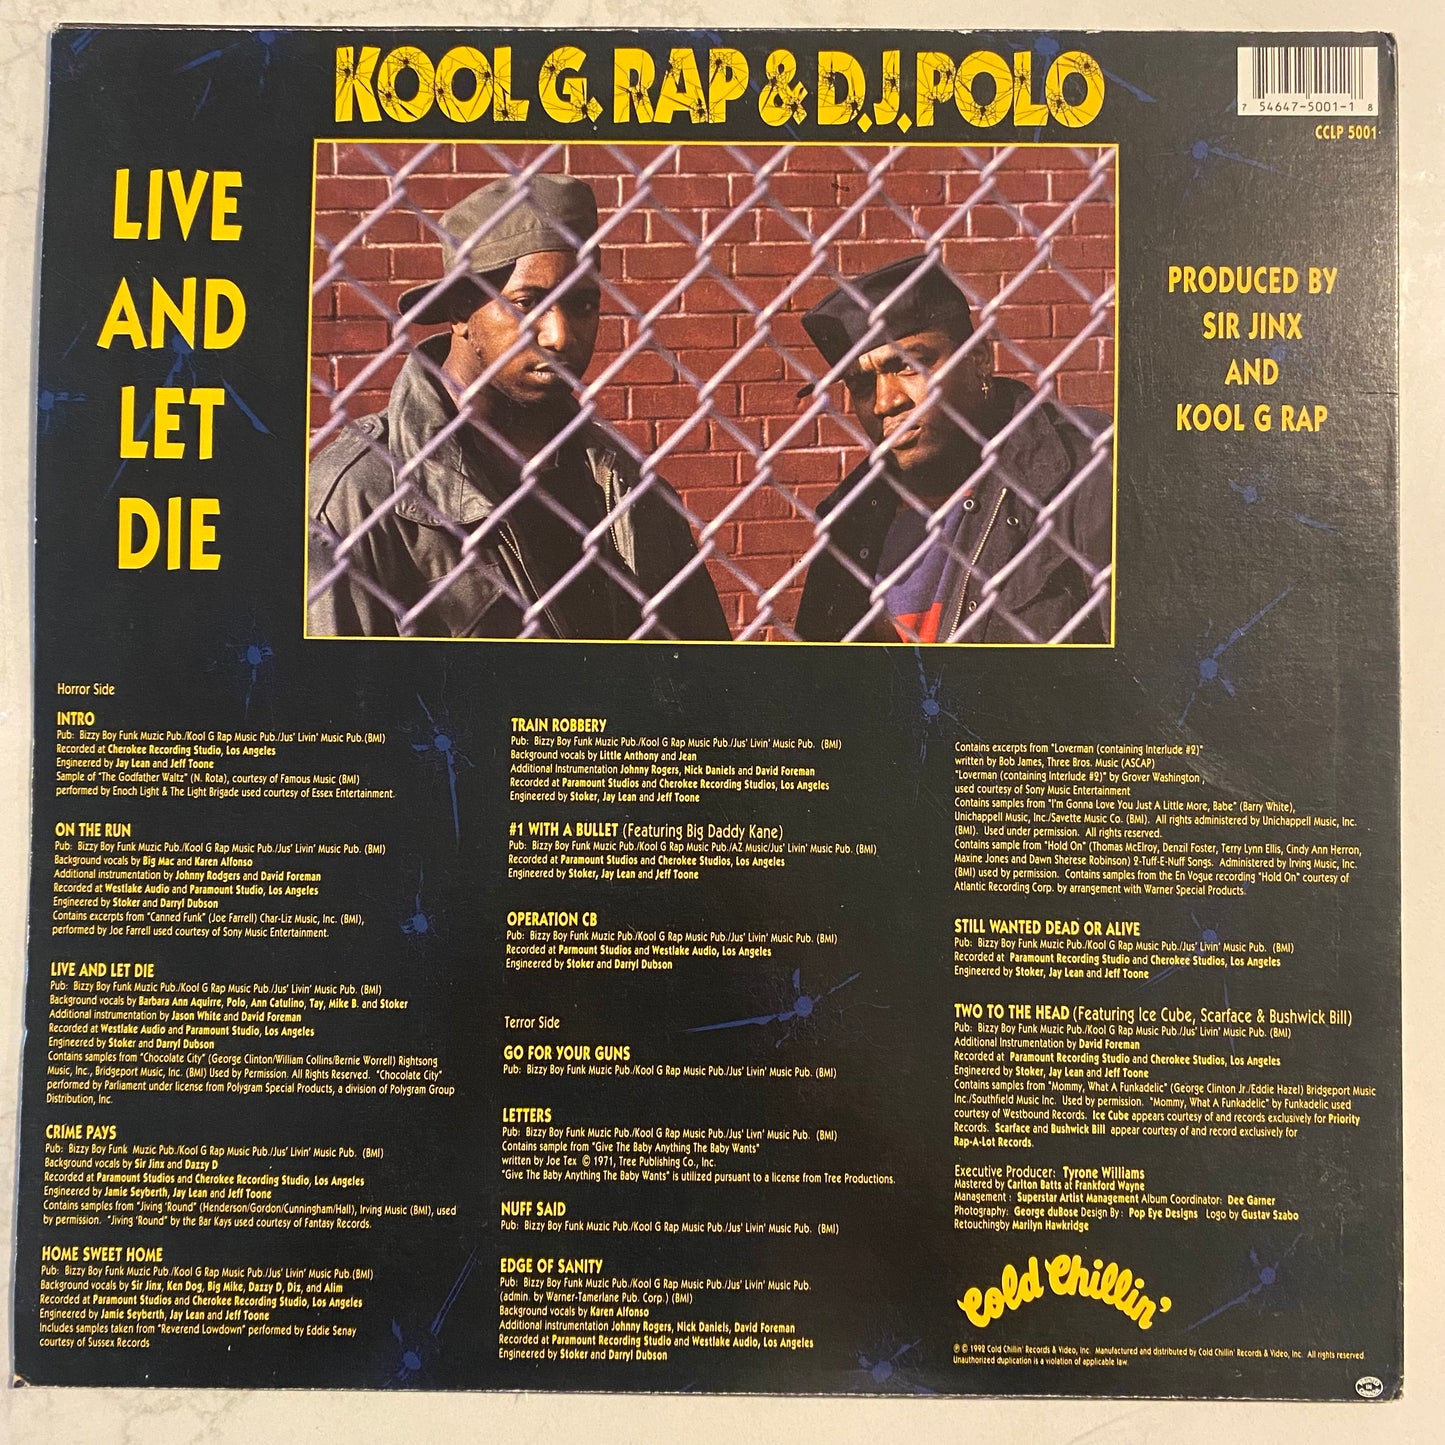 Kool G. Rap & D.J. Polo* - Live And Let Die (LP, Album)